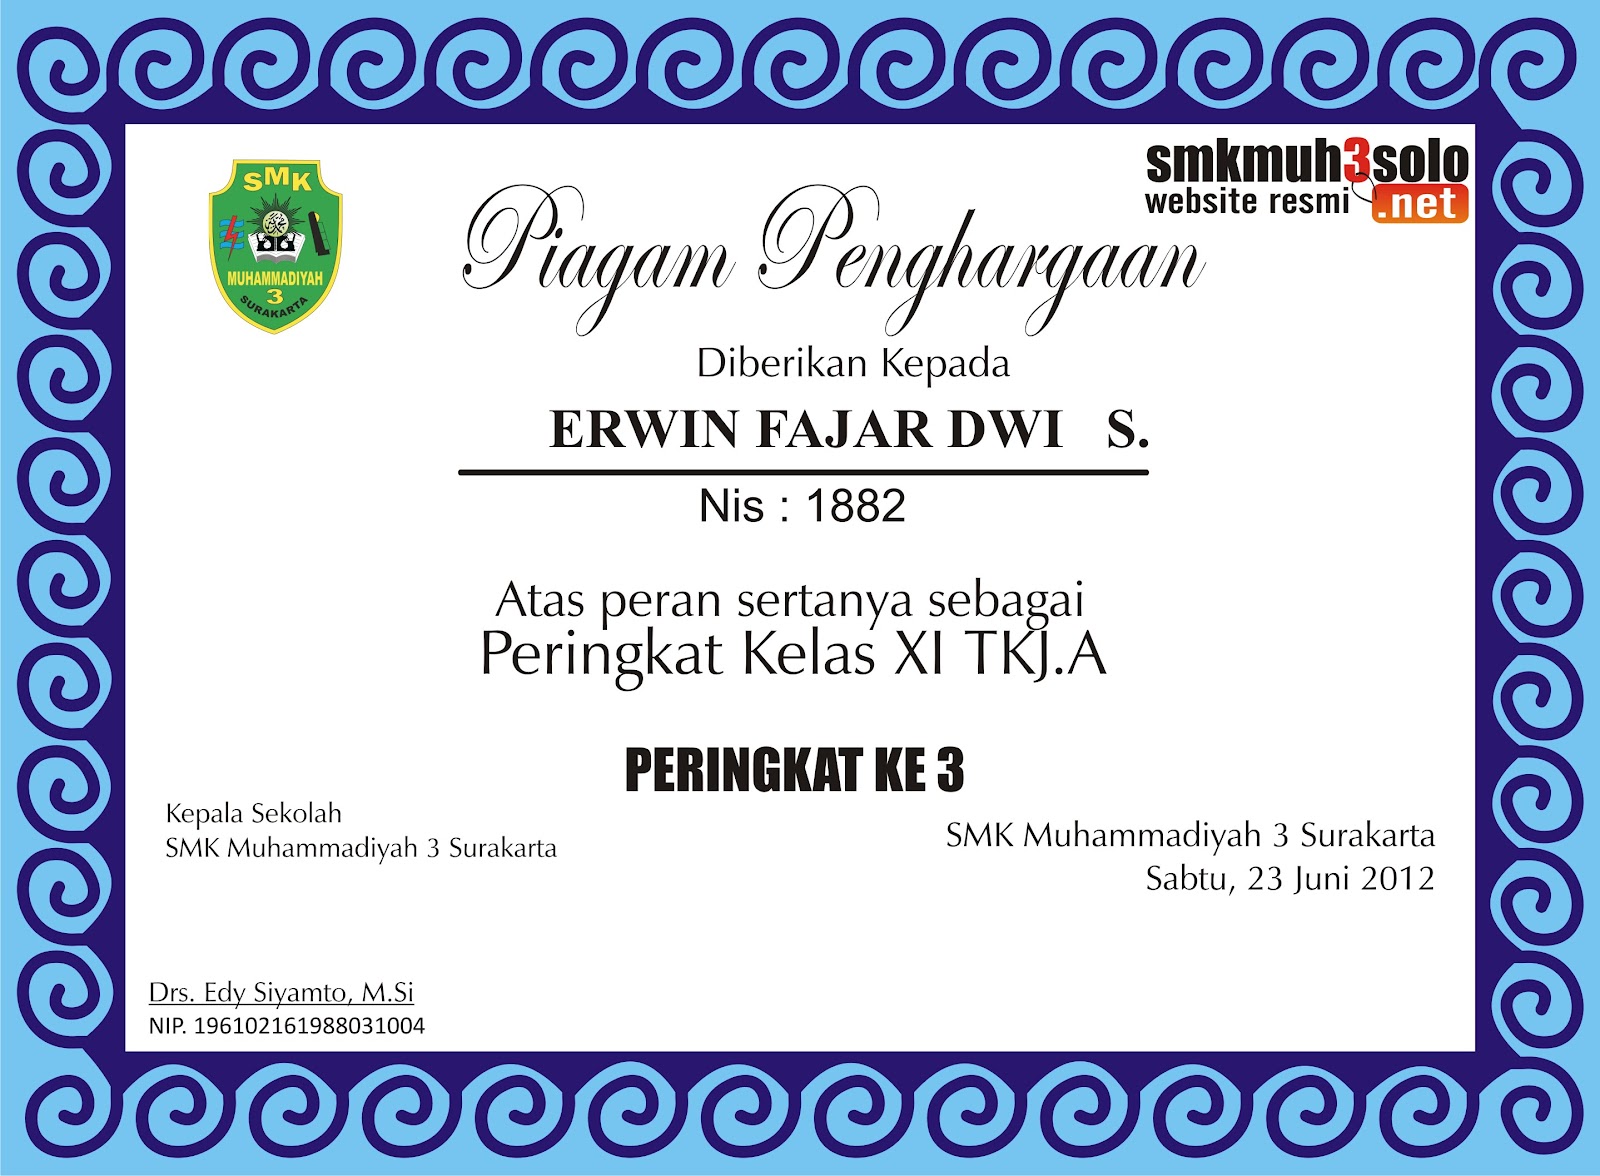 Sertifikat Penghargaan Juara kelas SMK Muhammadiyah 3 Surakarta Design 